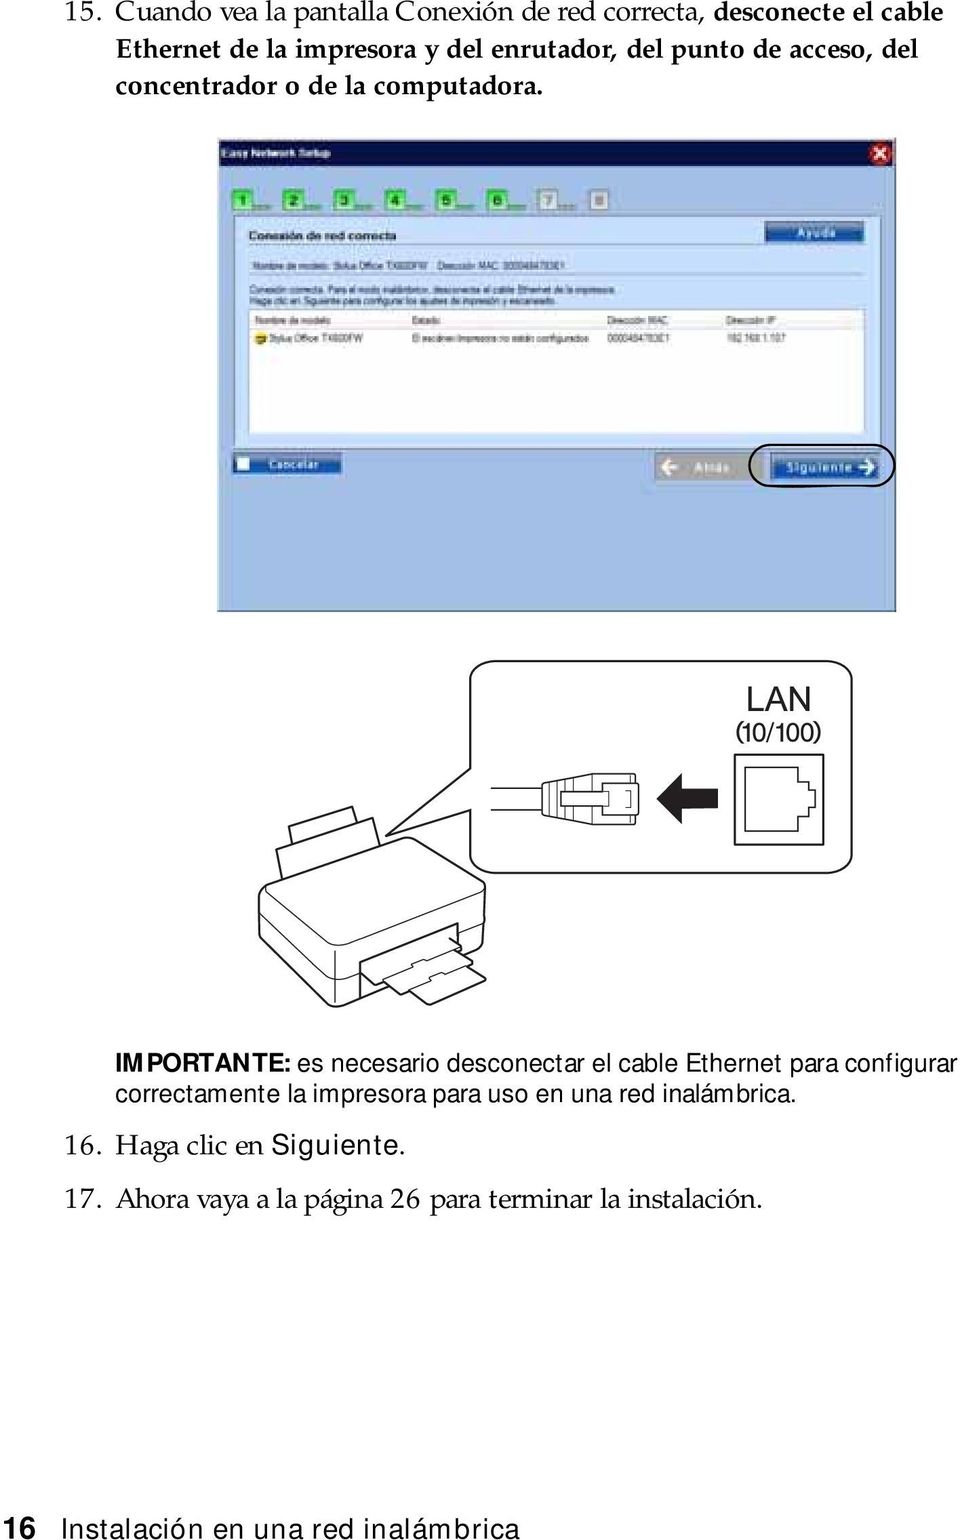 IMPORTANTE: es necesario desconectar el cable Ethernet para configurar correctamente la impresora para uso